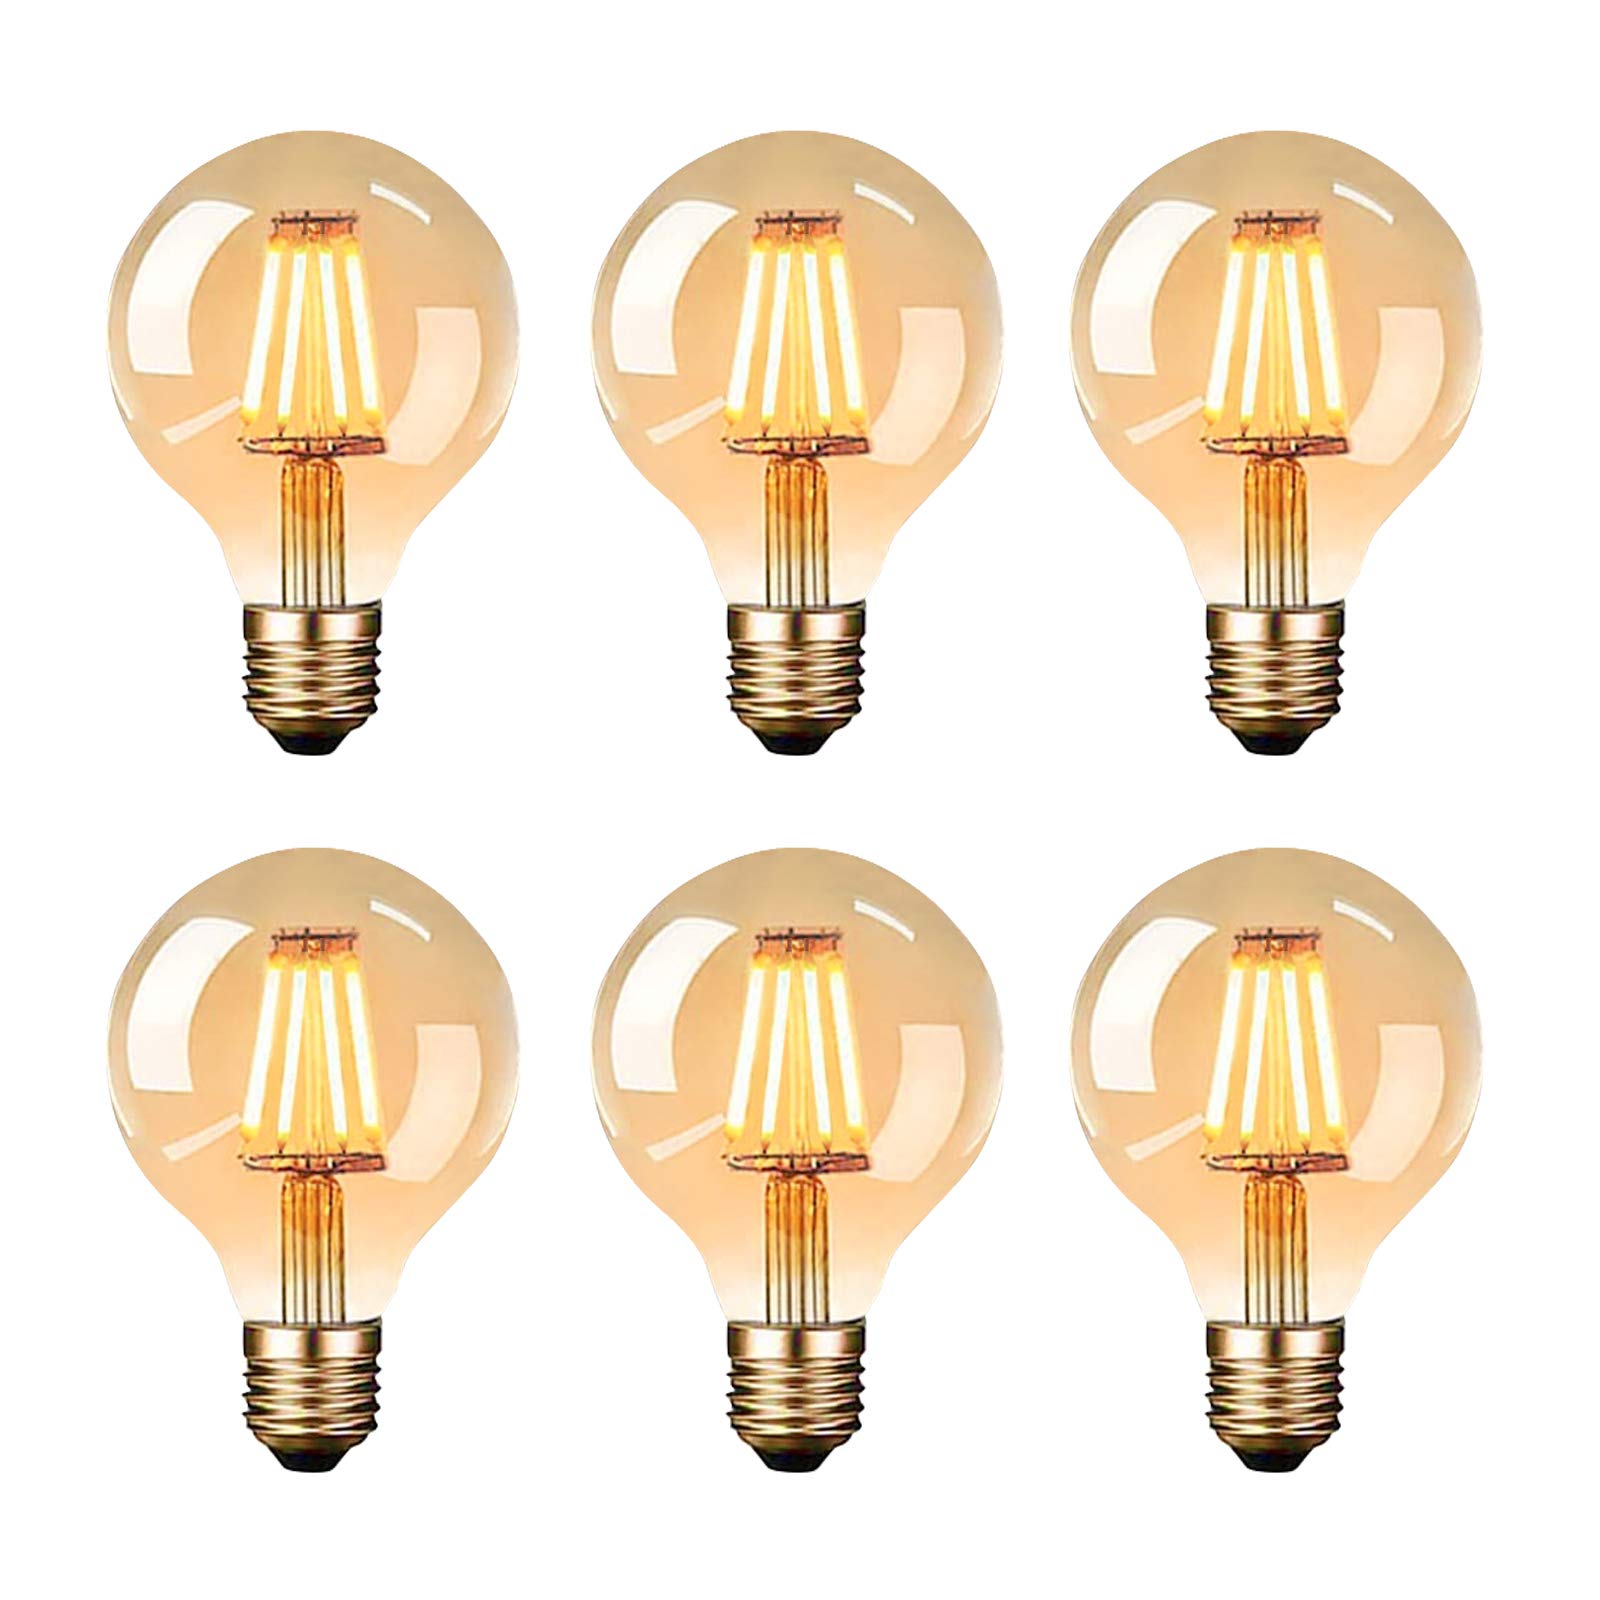 Joymy Edison Vintage Glühbirne, LED Vintage Glühbirne E27 G80 4W Warmweiss Antike Filament LED Glühlampe, Ideal für Nostalgie und Retro Beleuchtung im Haus Café Bar - 6 Stück